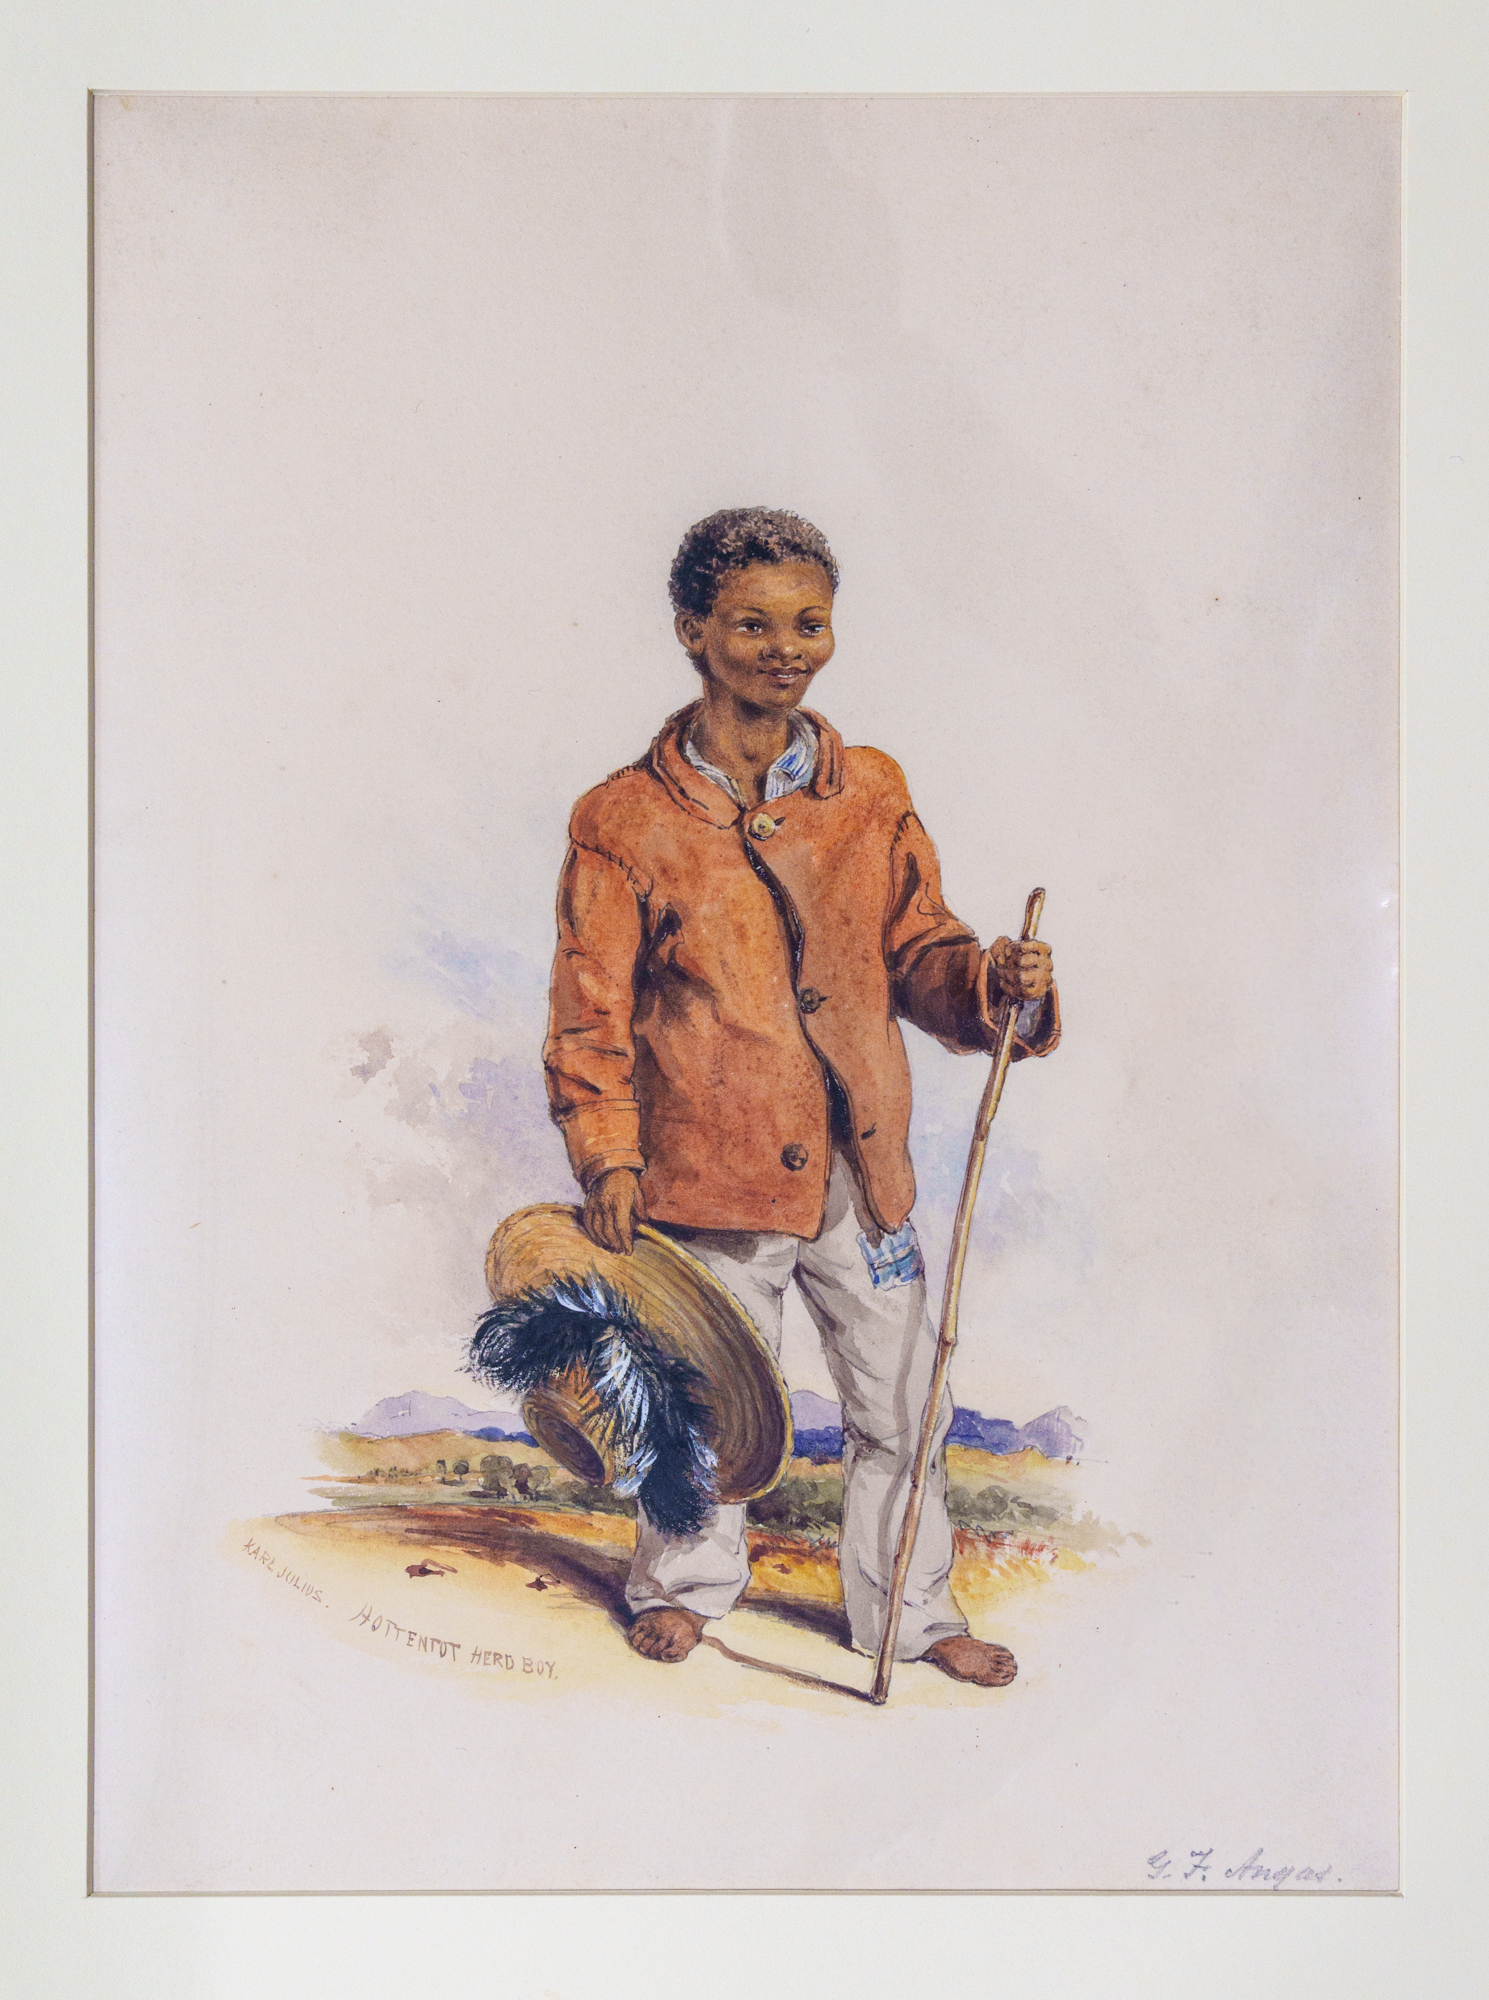 Karl Julius. Hottentot Herd-boy, 1847